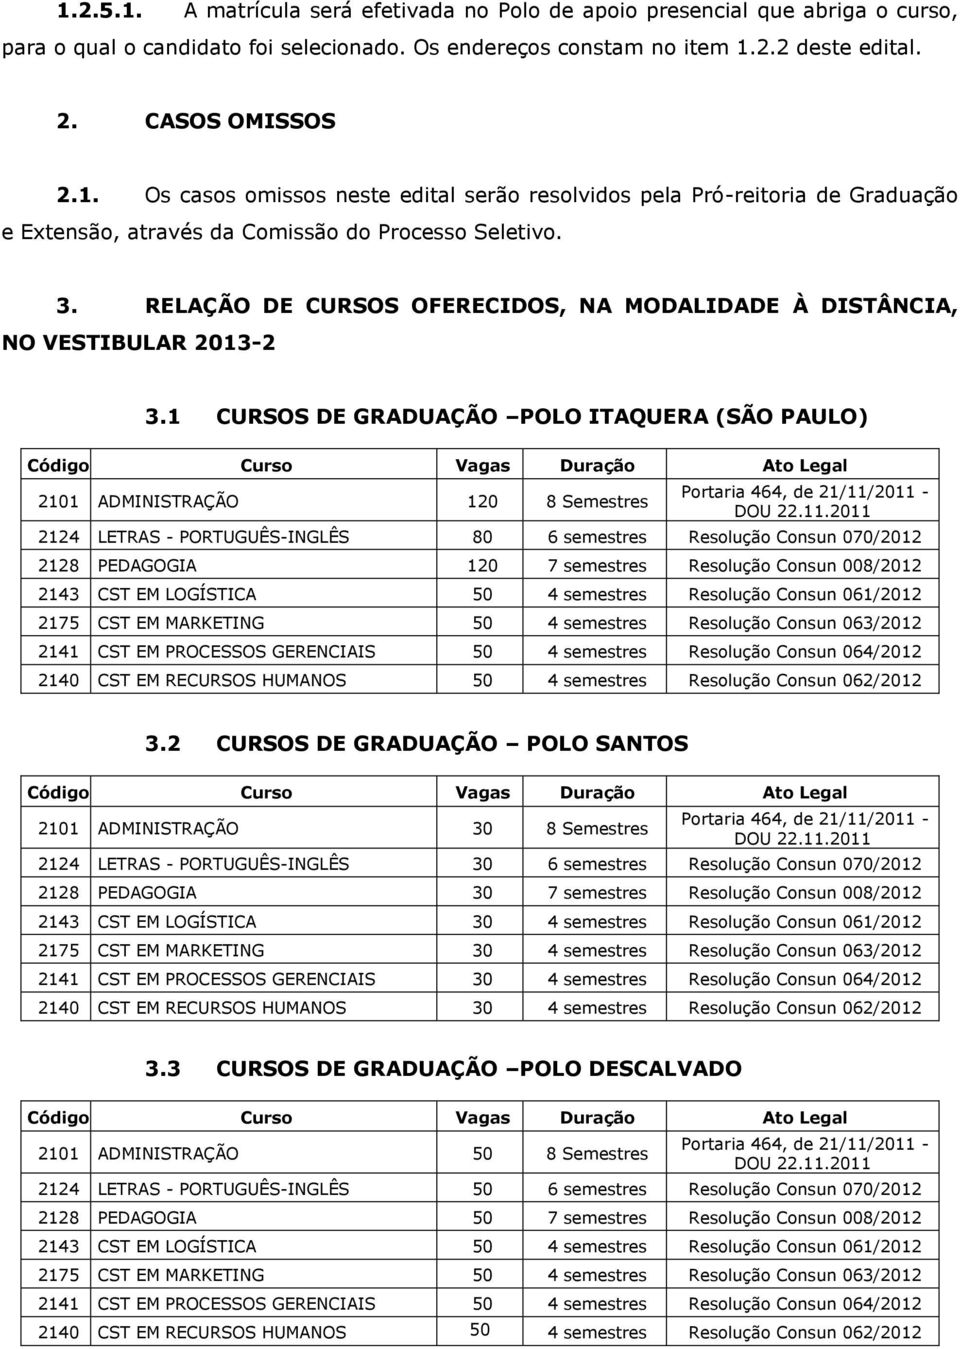 1 CURSOS DE GRADUAÇÃO POLO ITAQUERA (SÃO PAULO) 2101 ADMINISTRAÇÃO 120 8 Semestres 2124 LETRAS - PORTUGUÊS-INGLÊS 80 6 semestres Resolução Consun 070/2012 2128 PEDAGOGIA 120 7 semestres Resolução